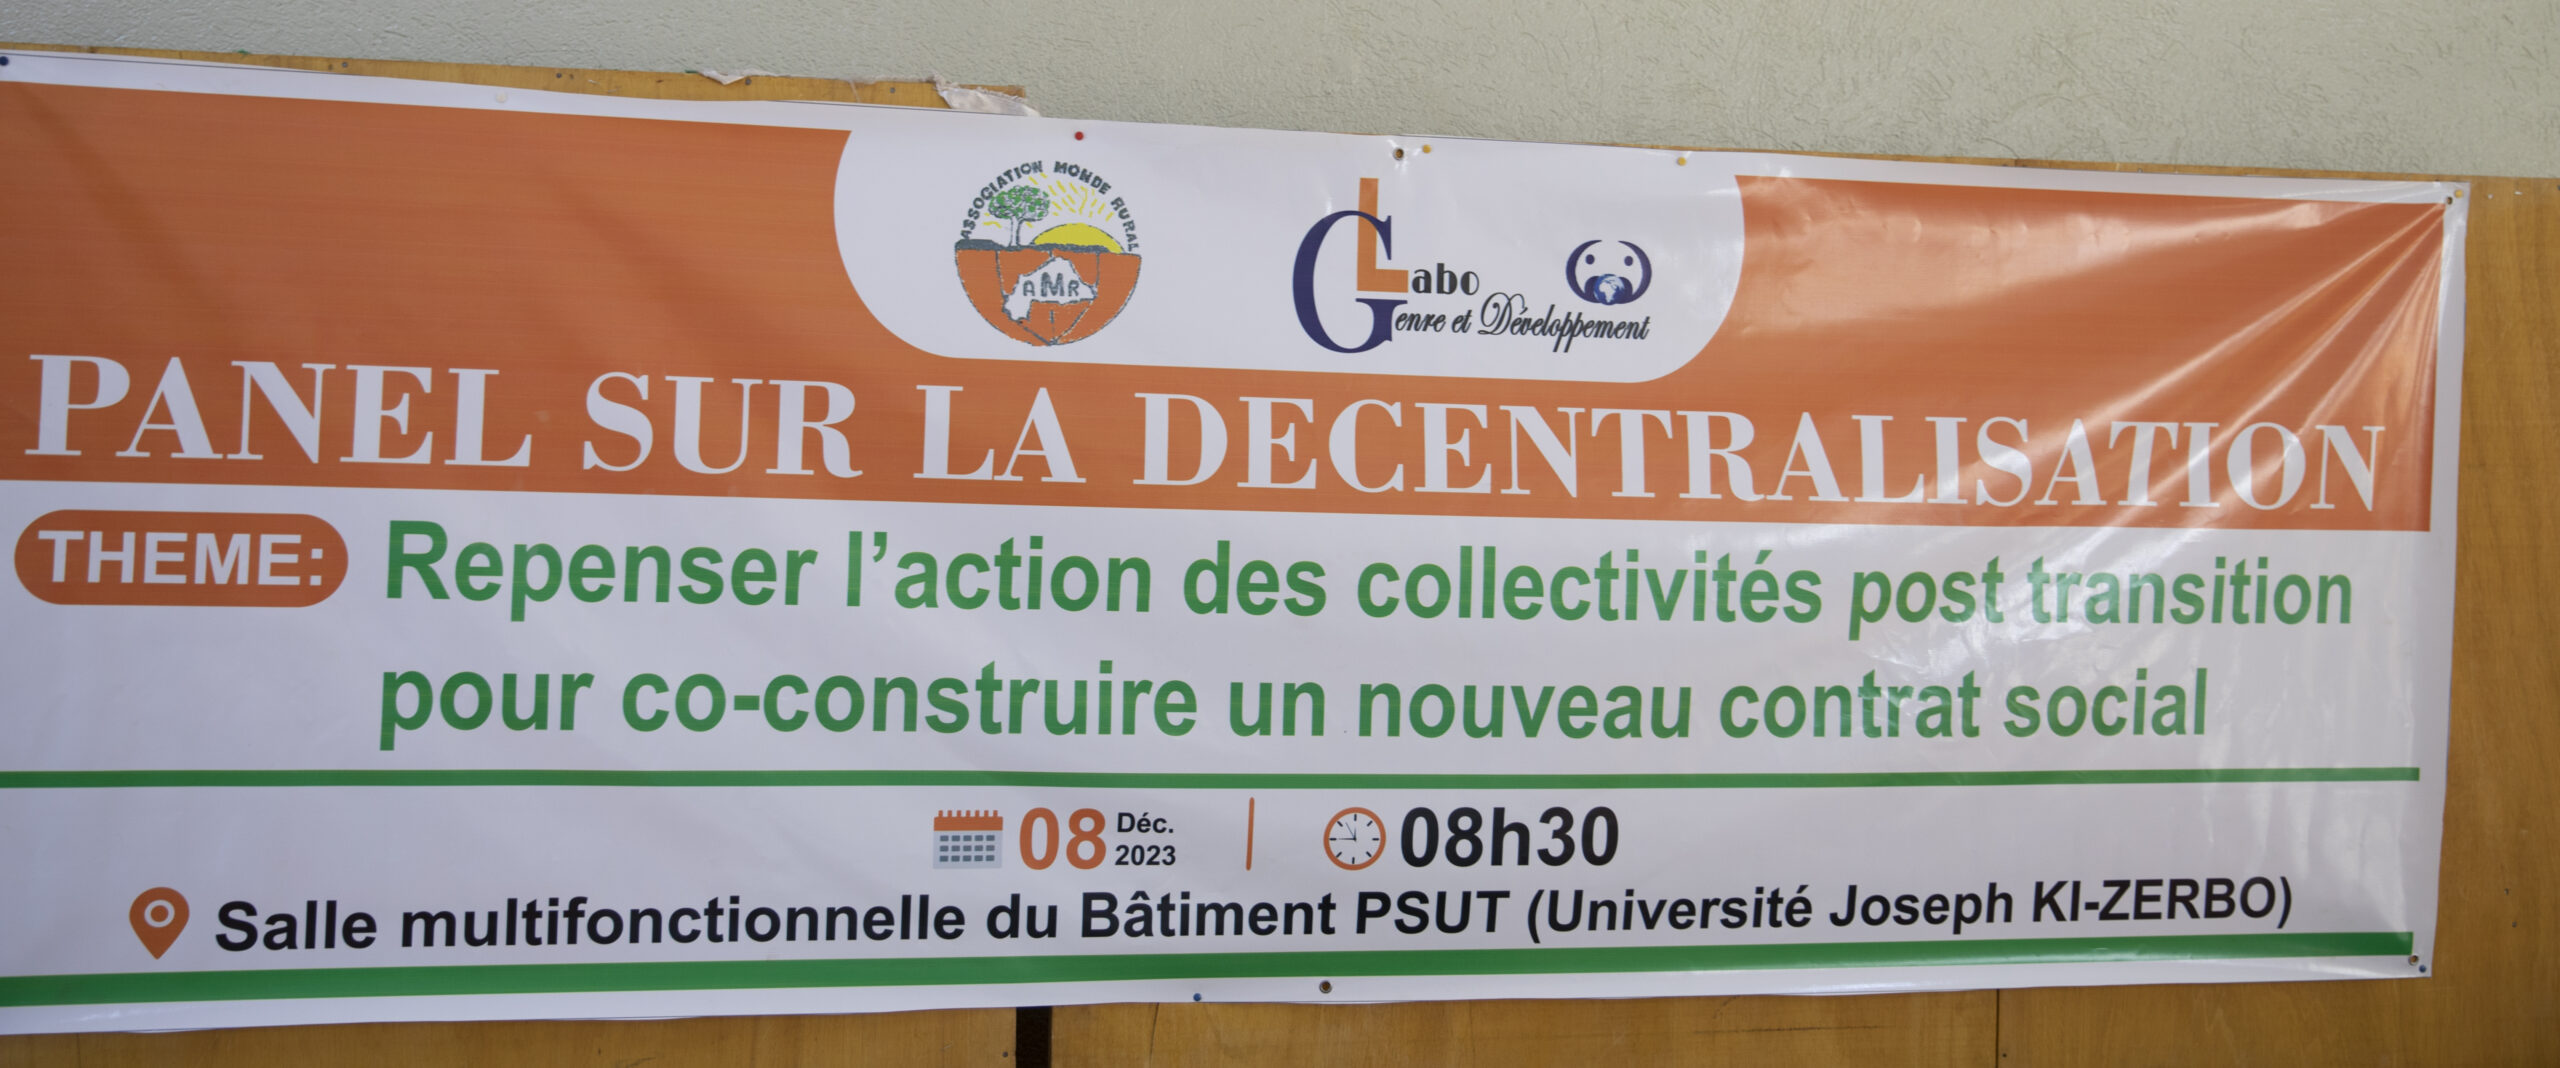 UJKZ :Le Laboratoire Genre et Développement questionne la décentralisation à la burkinabè 